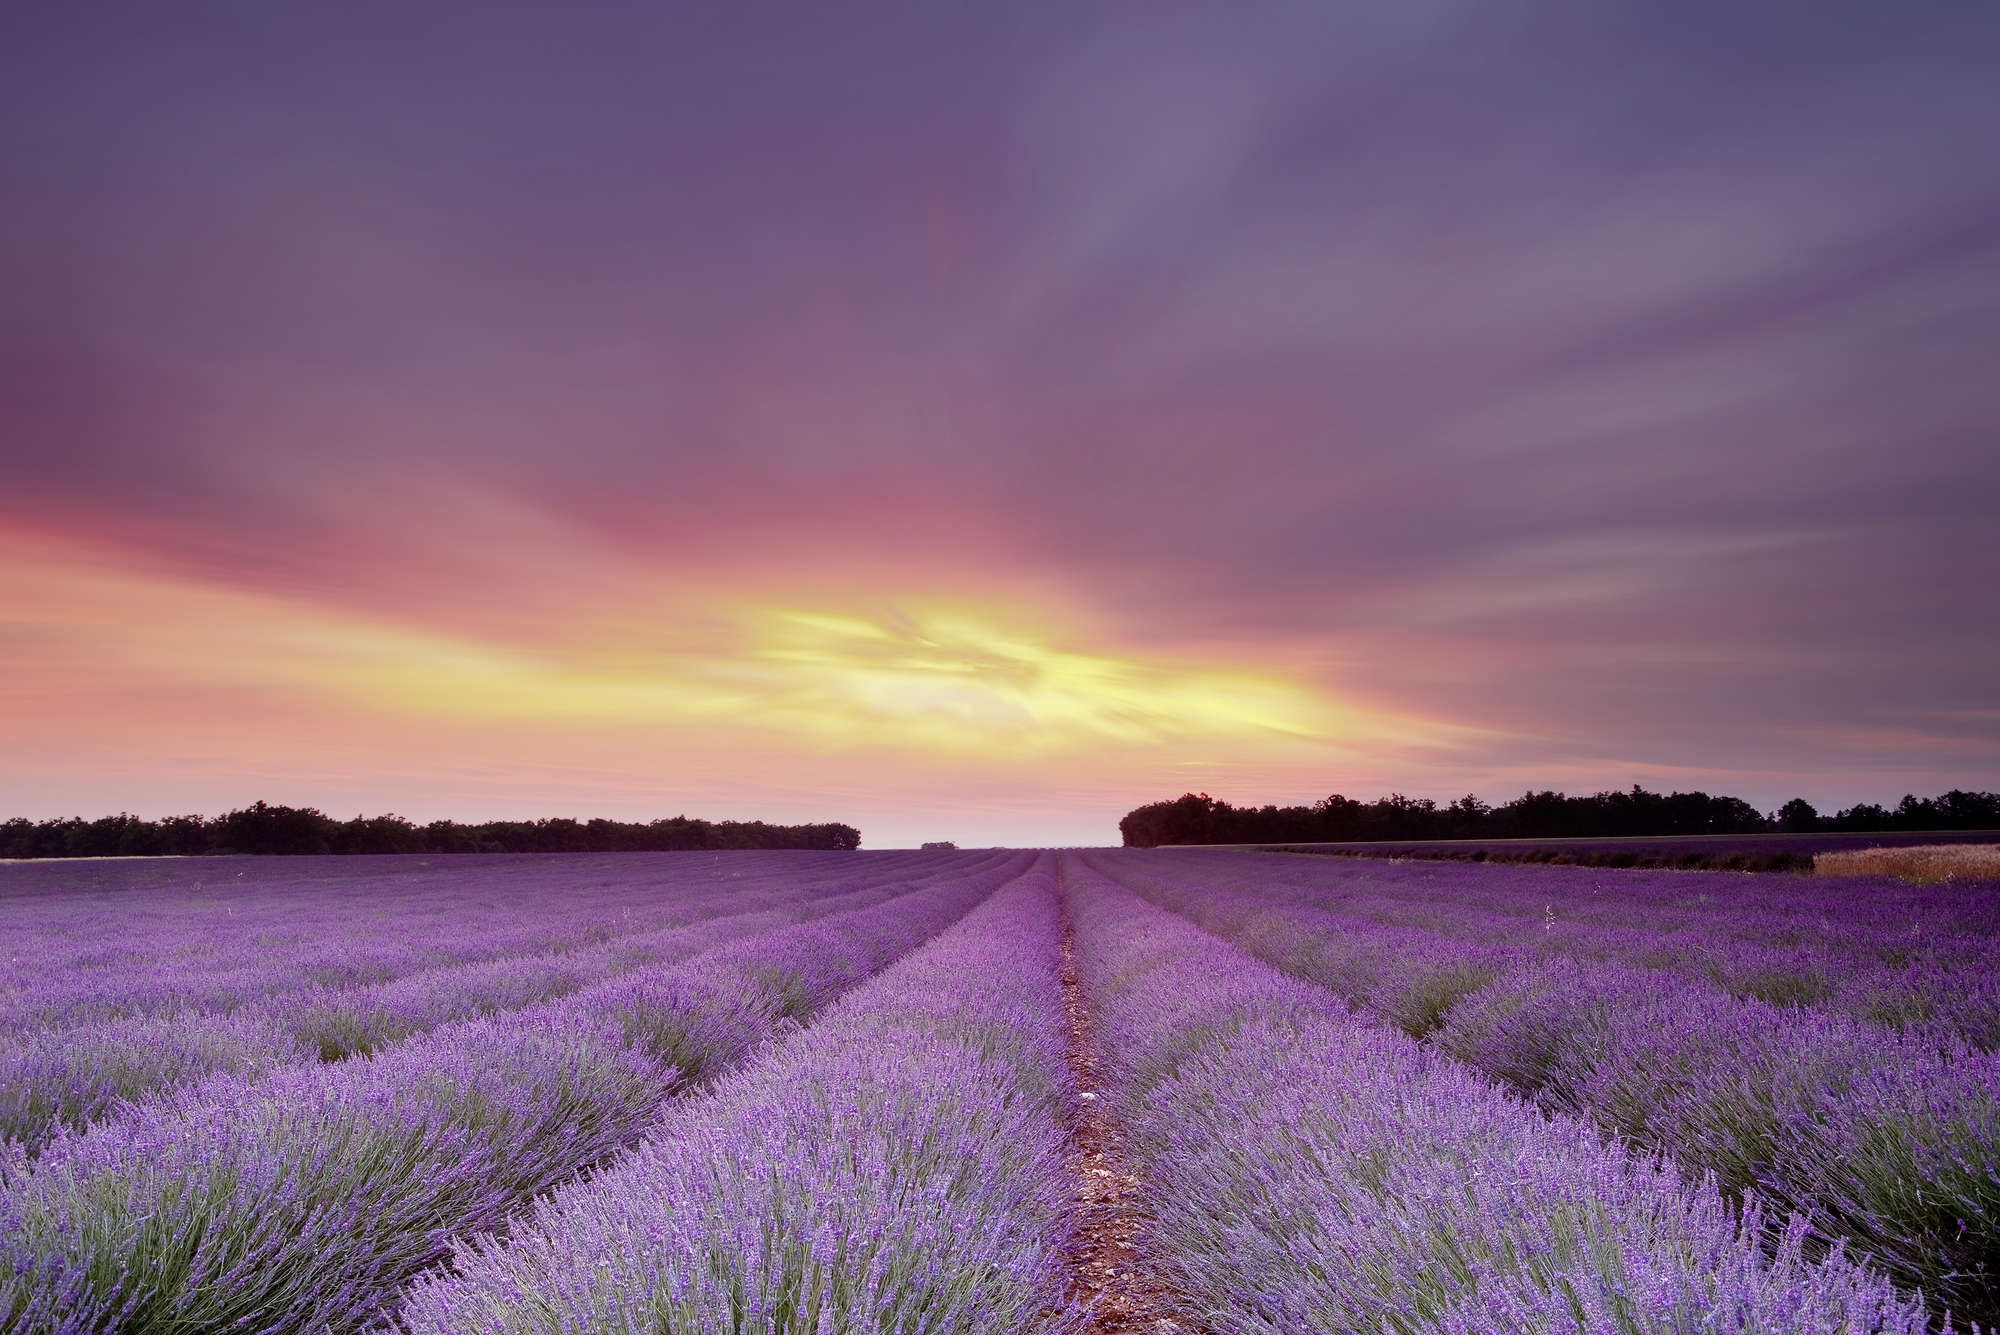             Natur Fototapete Lavendelfeld im Sonnenuntergang – Perlmutt Glattvlies
        